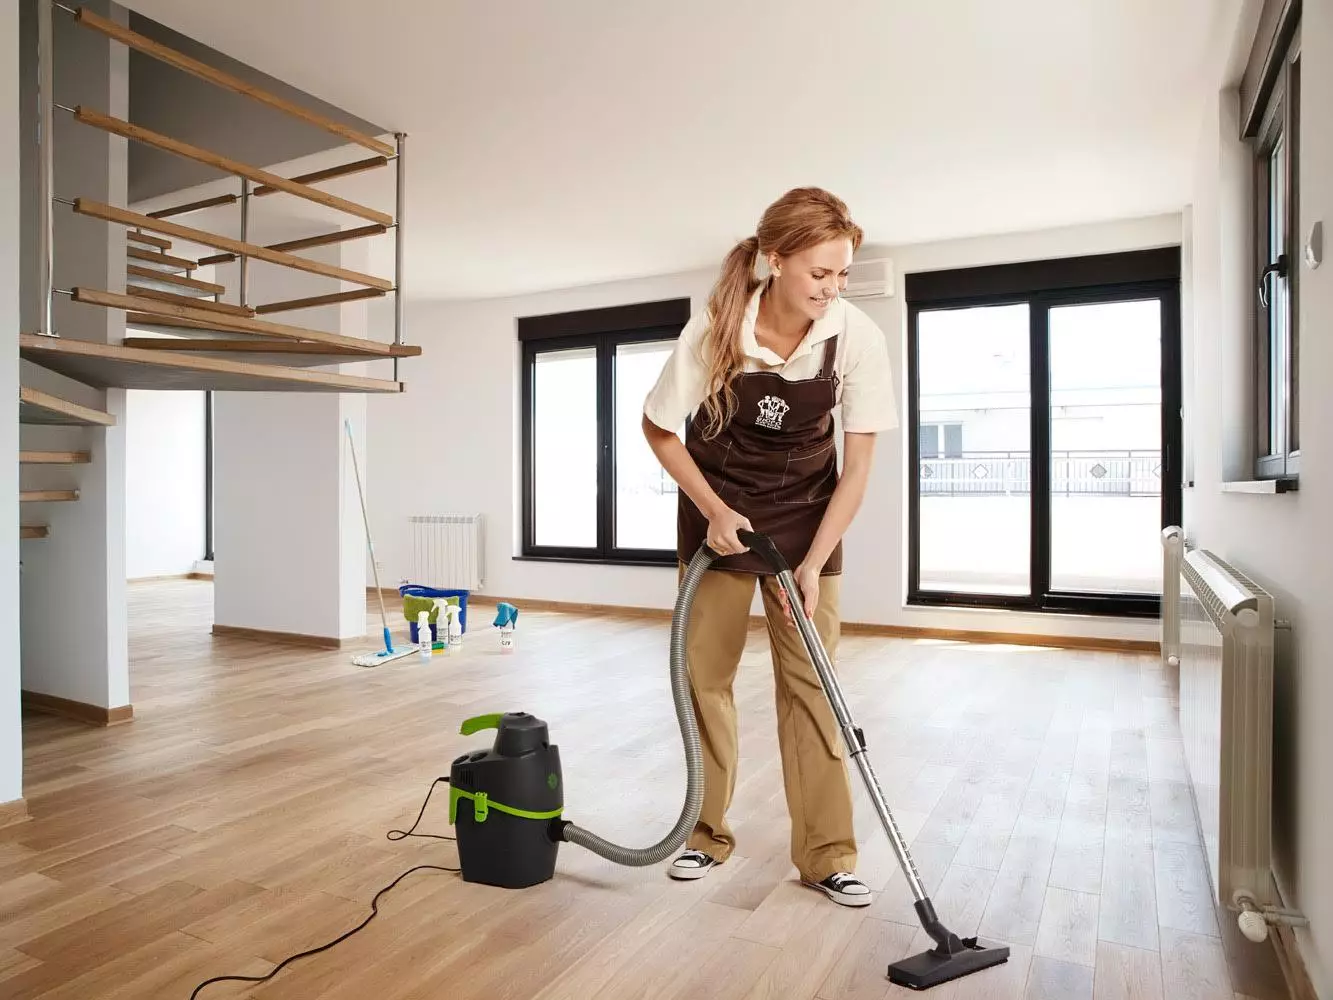 Καθαρισμός στο διαμέρισμα: Πώς να αφαιρέσετε στα δωμάτια και πού να ξεκινήσετε; Γρήγορο καθημερινό και εβδομαδιαίο καθαρισμό. Πώς να κάνετε ένα σχέδιο και να το περάσετε σωστά με τα χέρια σας; 11069_3